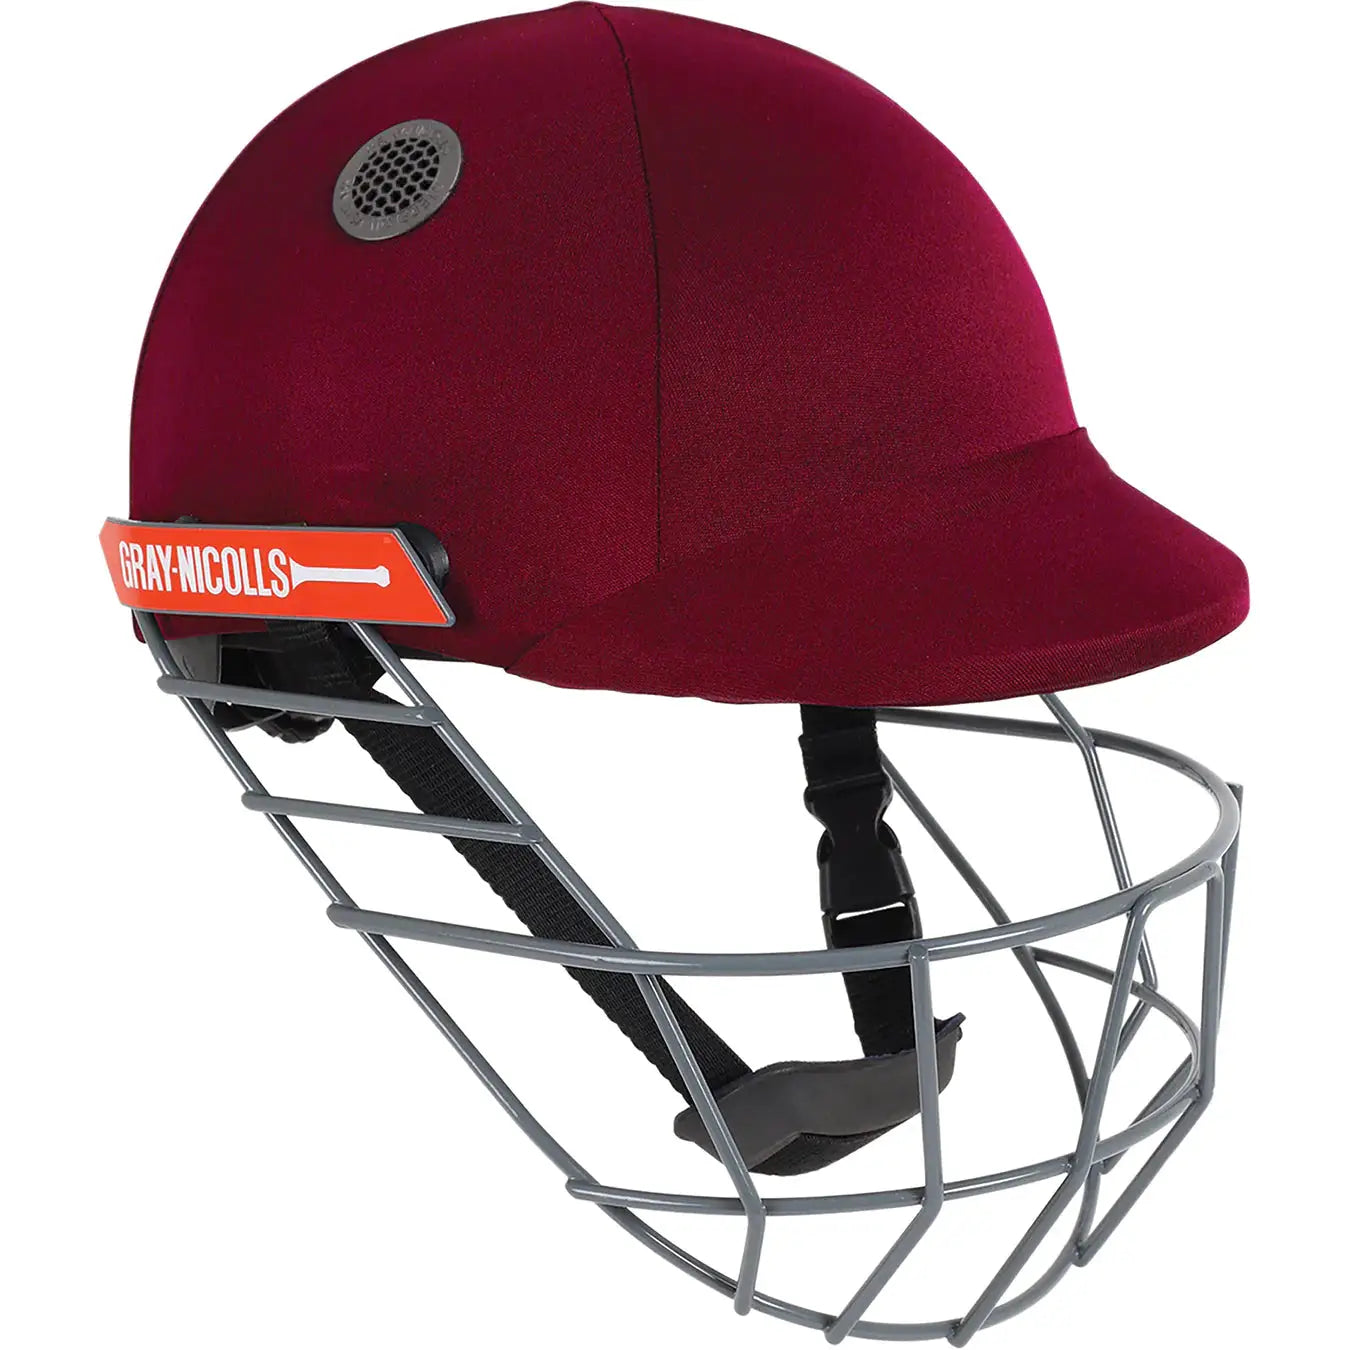 Gray Nicolls Atomic Cricket Helmet Maroon - Medium - HELMETS & HEADGEAR